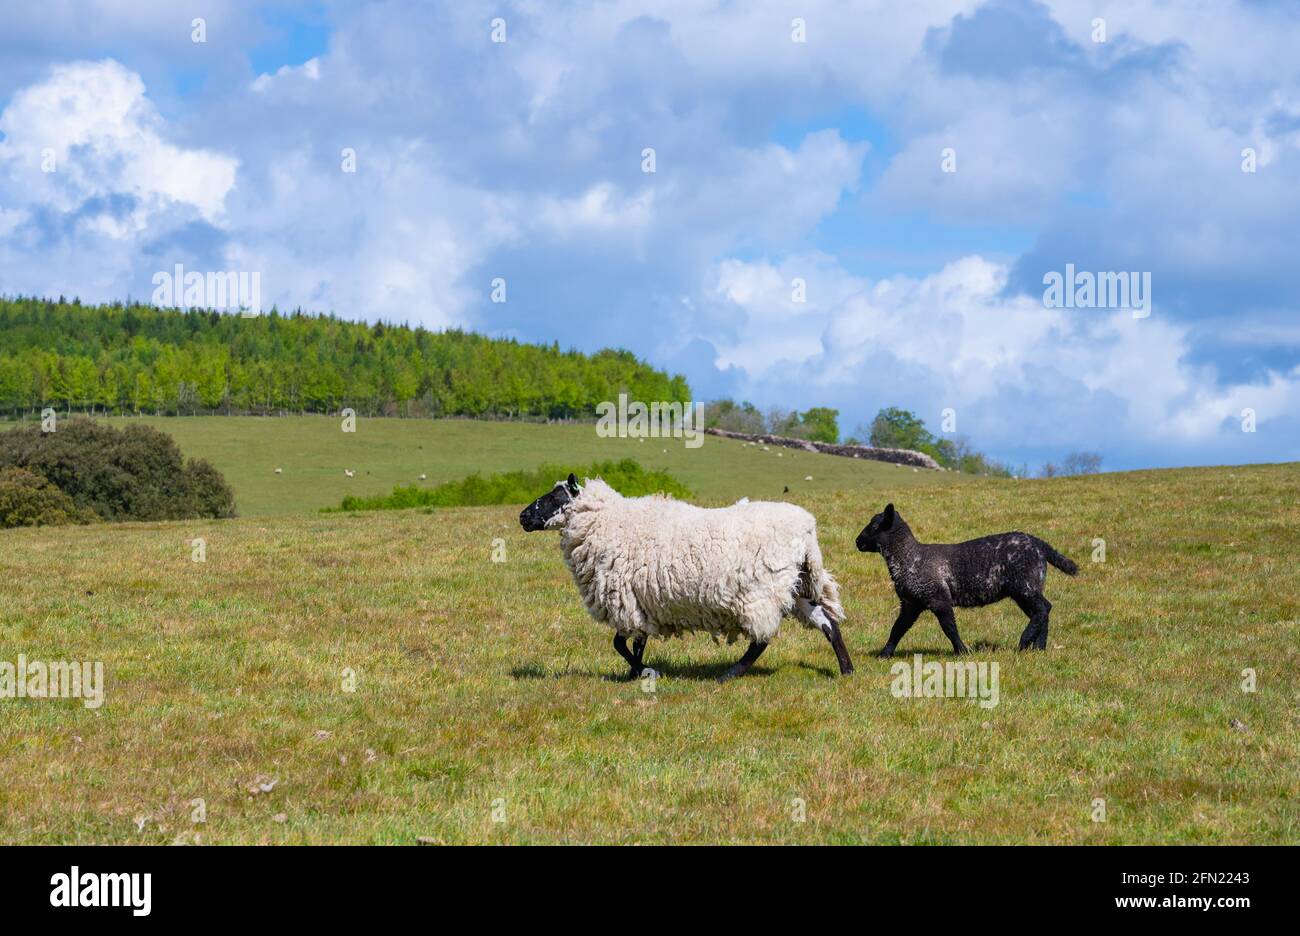 Moutons et agneau (Ovis aries) courant sur l'herbe dans un champ au printemps dans le parc national d'Arundel sur les South Downs à West Sussex, Angleterre, Royaume-Uni. Copier l'espace. Banque D'Images